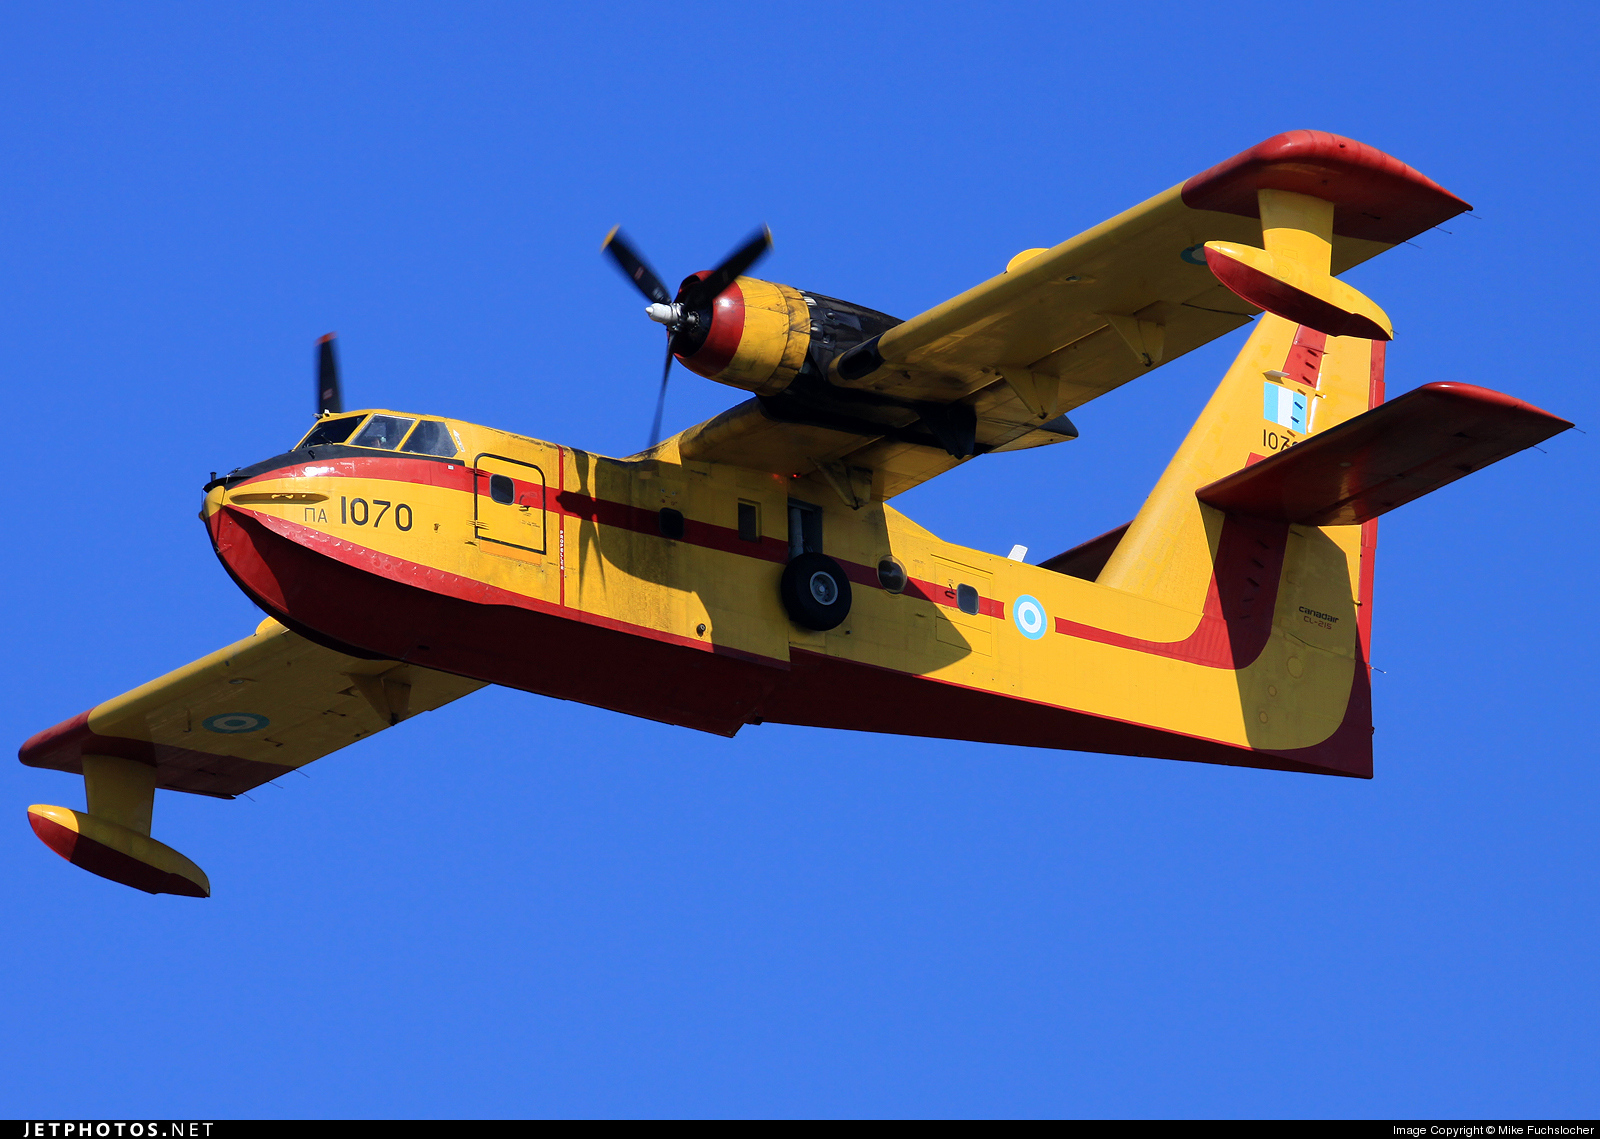 Το CL-215 σε υπηρεσία με την ΠΑ – Ποια είναι τα δυστυχήματα με τα πυροσβεστικά αεροσκάφη στην Ελλάδα